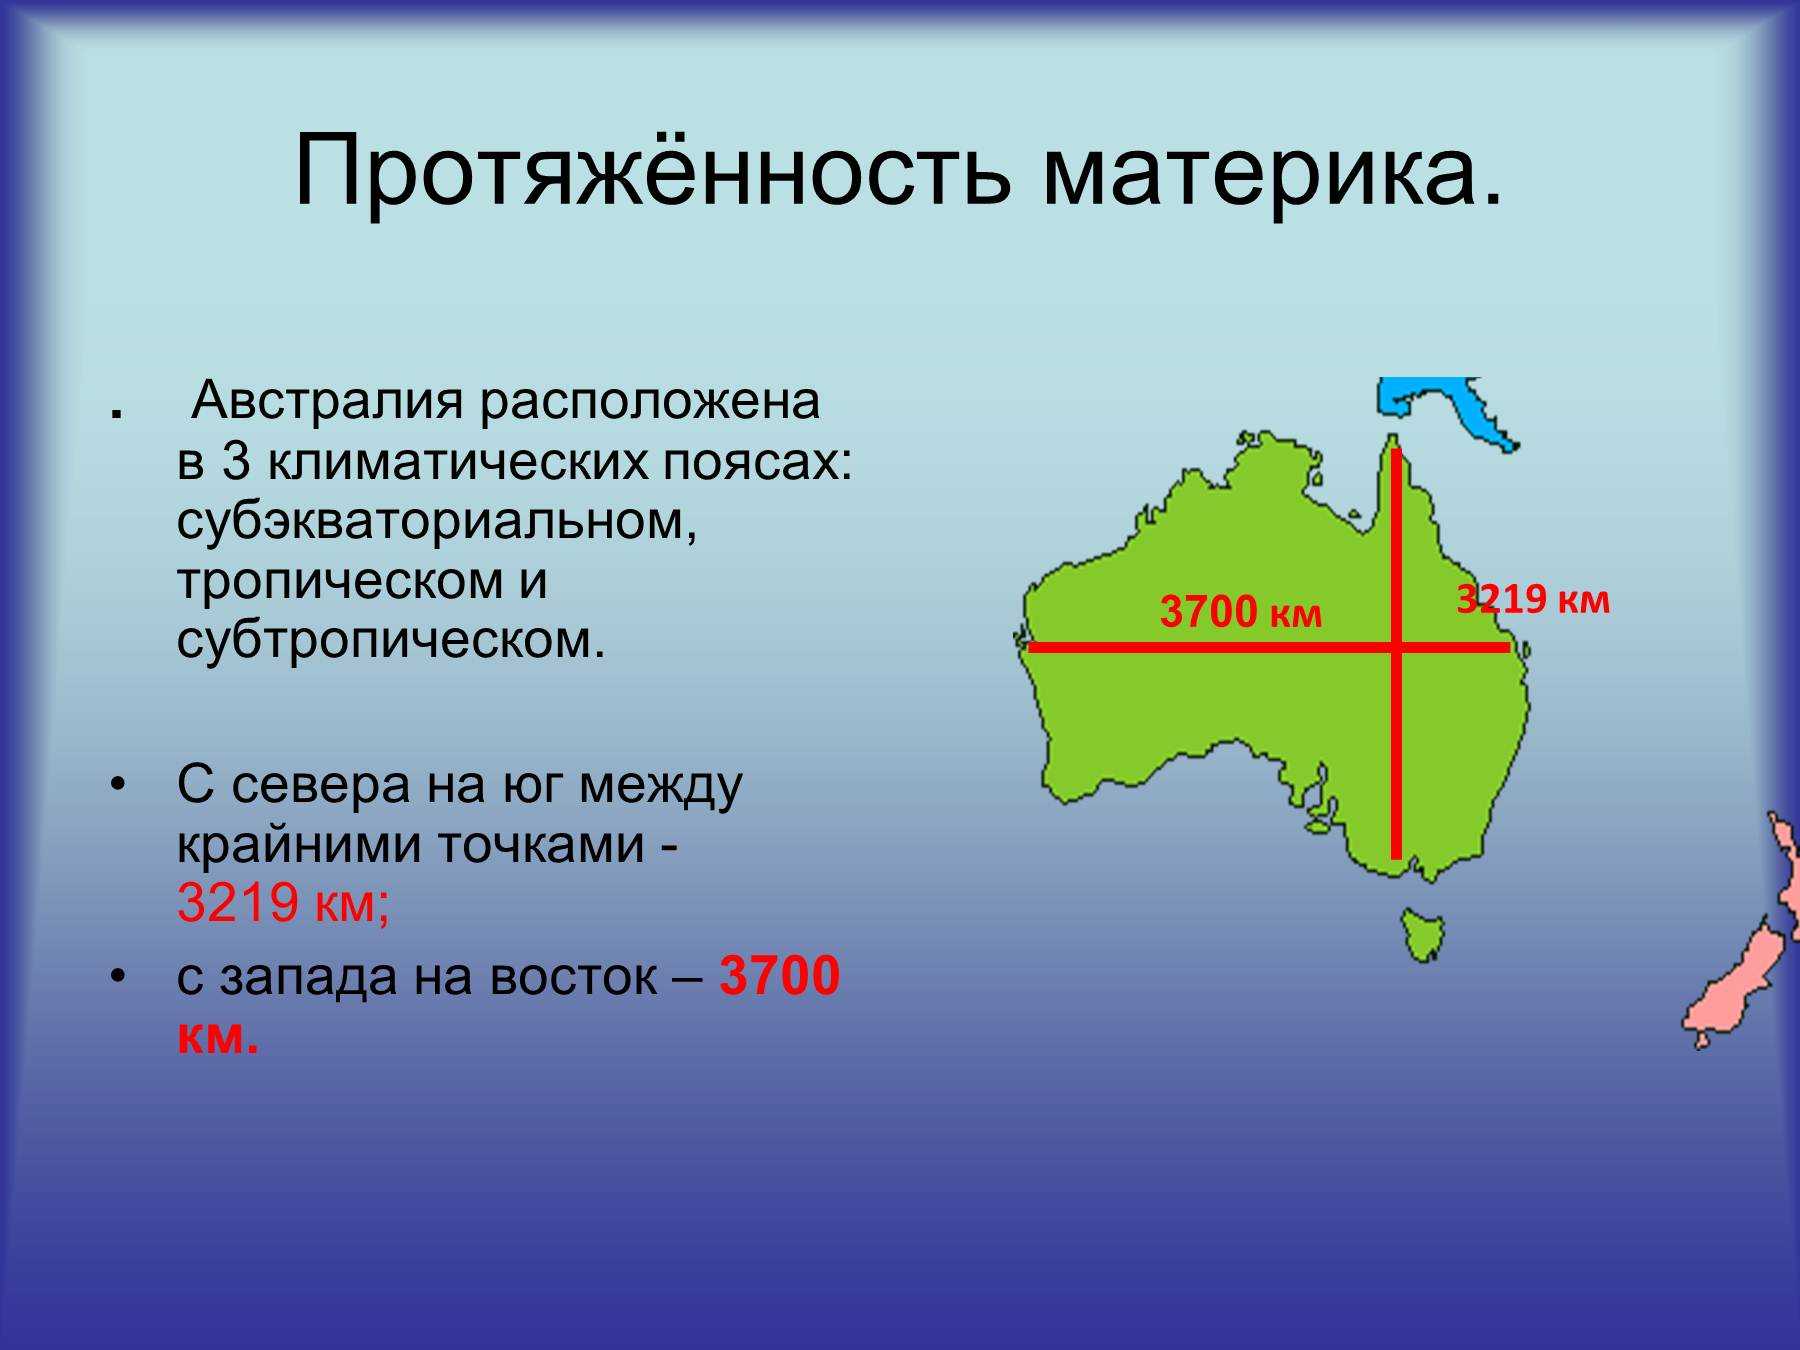 Географические координаты крайних точек австралии 7. Географическое положение крайних точек Австралии. Протяженность Австралии. Протяженность материка. Протяженность материка Австралия в градусах.